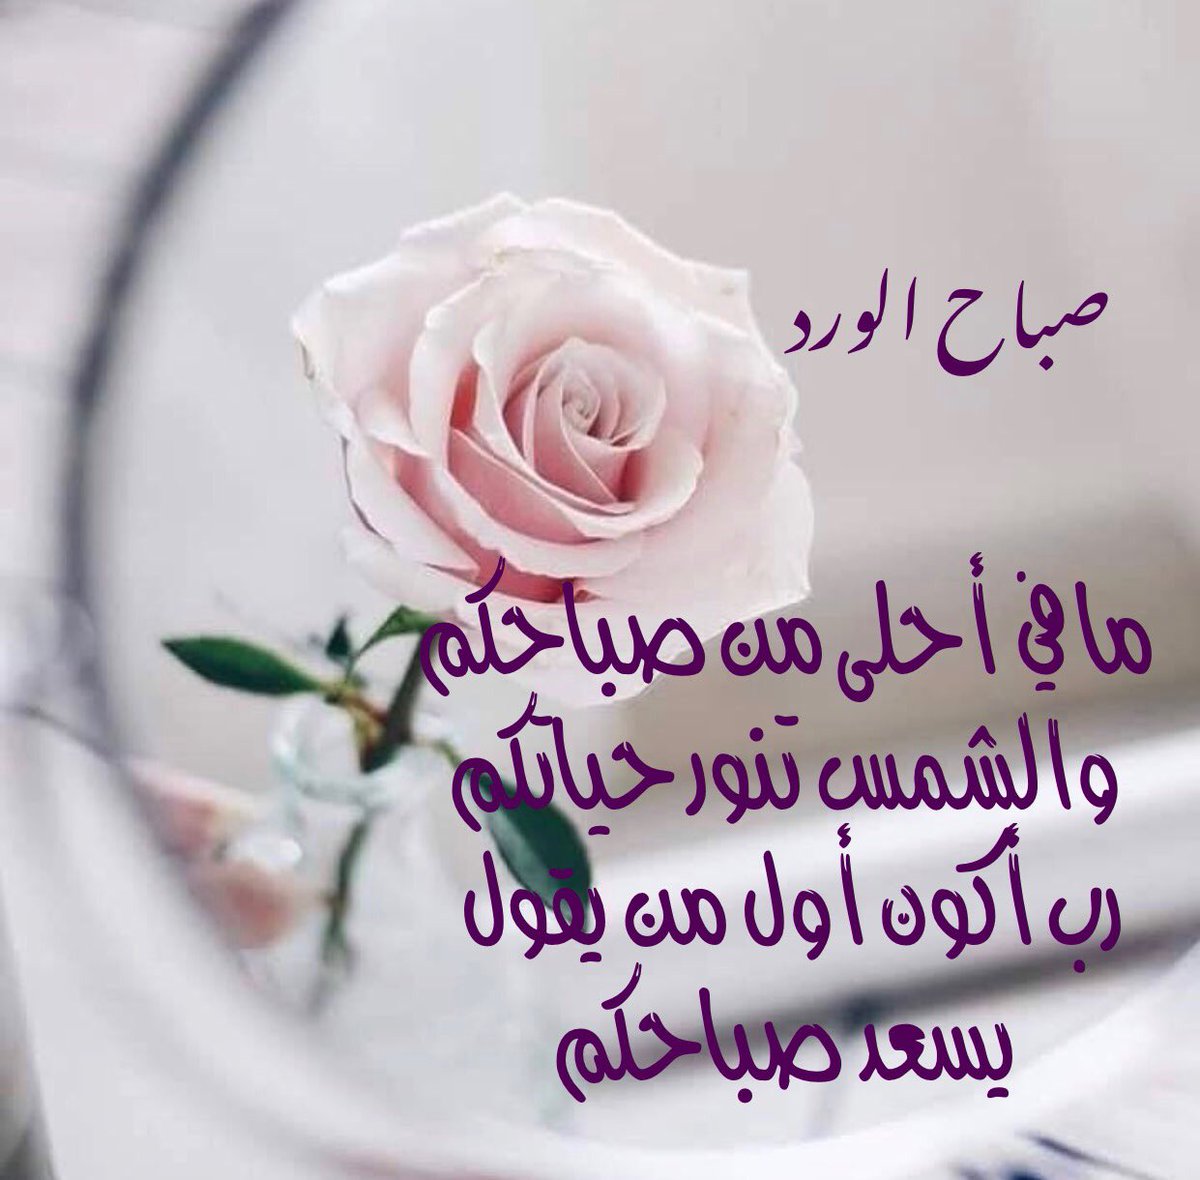 صباح الورد حبيبي رسائل رومانسية للحبيب 2020